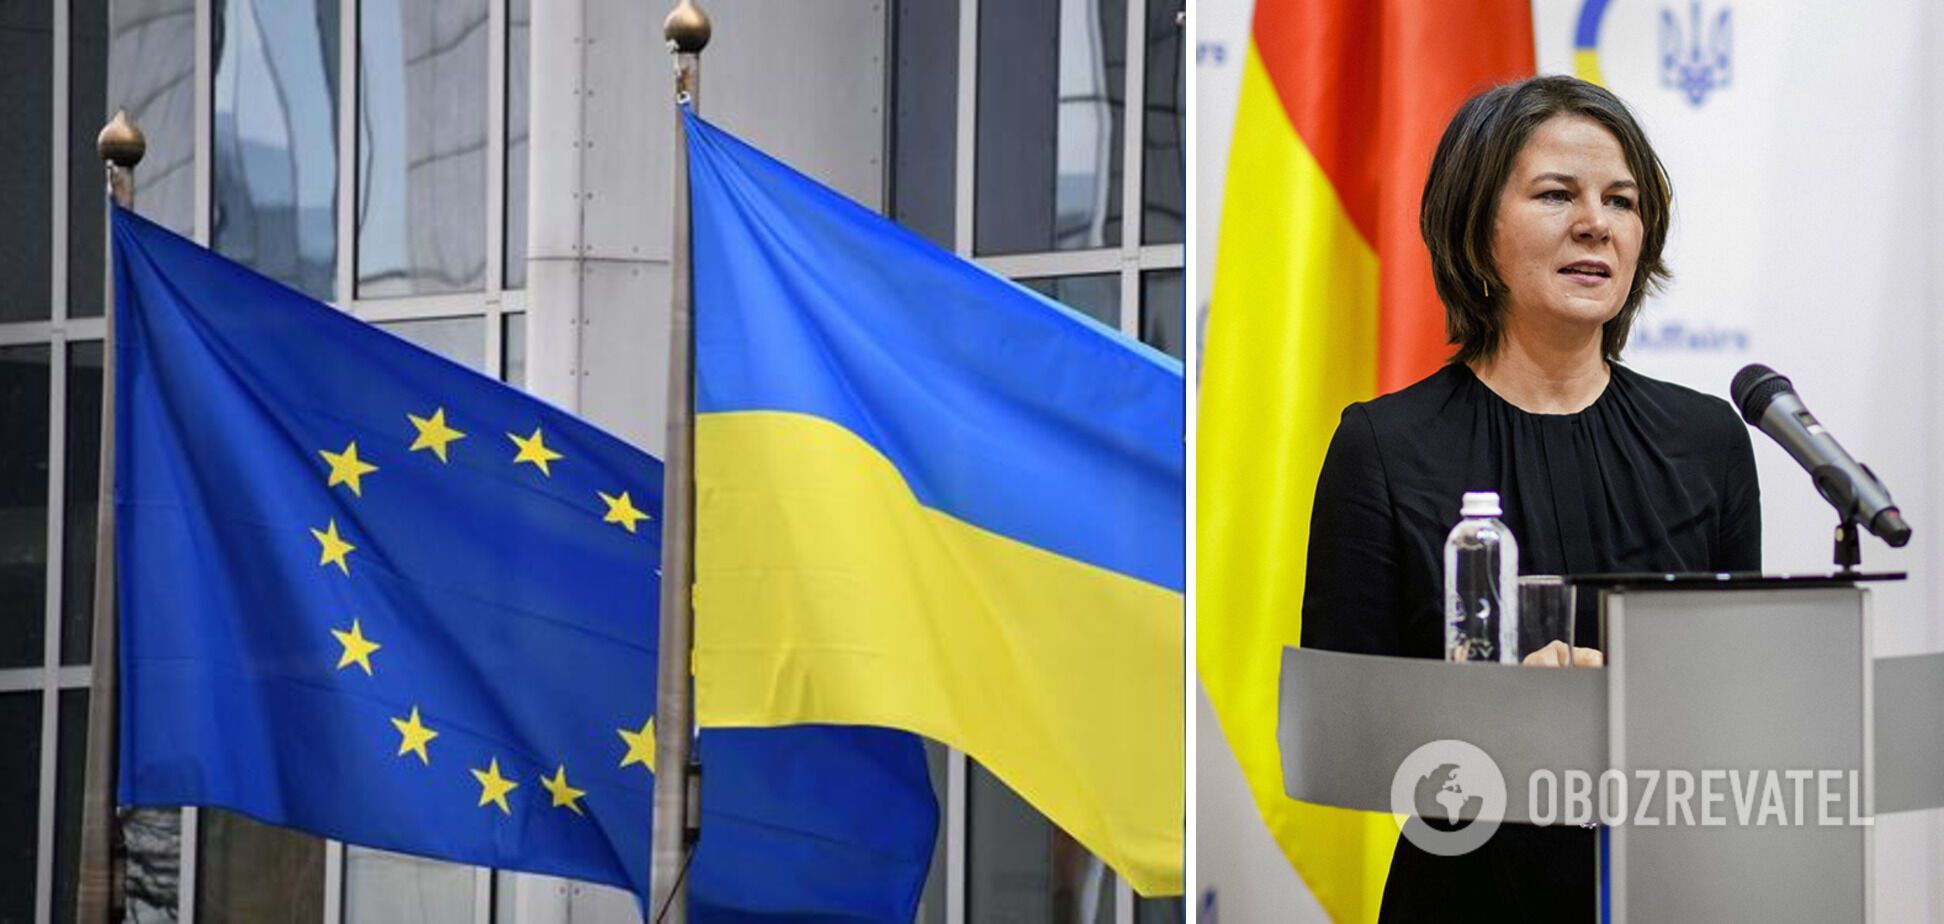 Анналена Бербок поддерживает предоставление Украине статуса кандидата на вступление в ЕС 